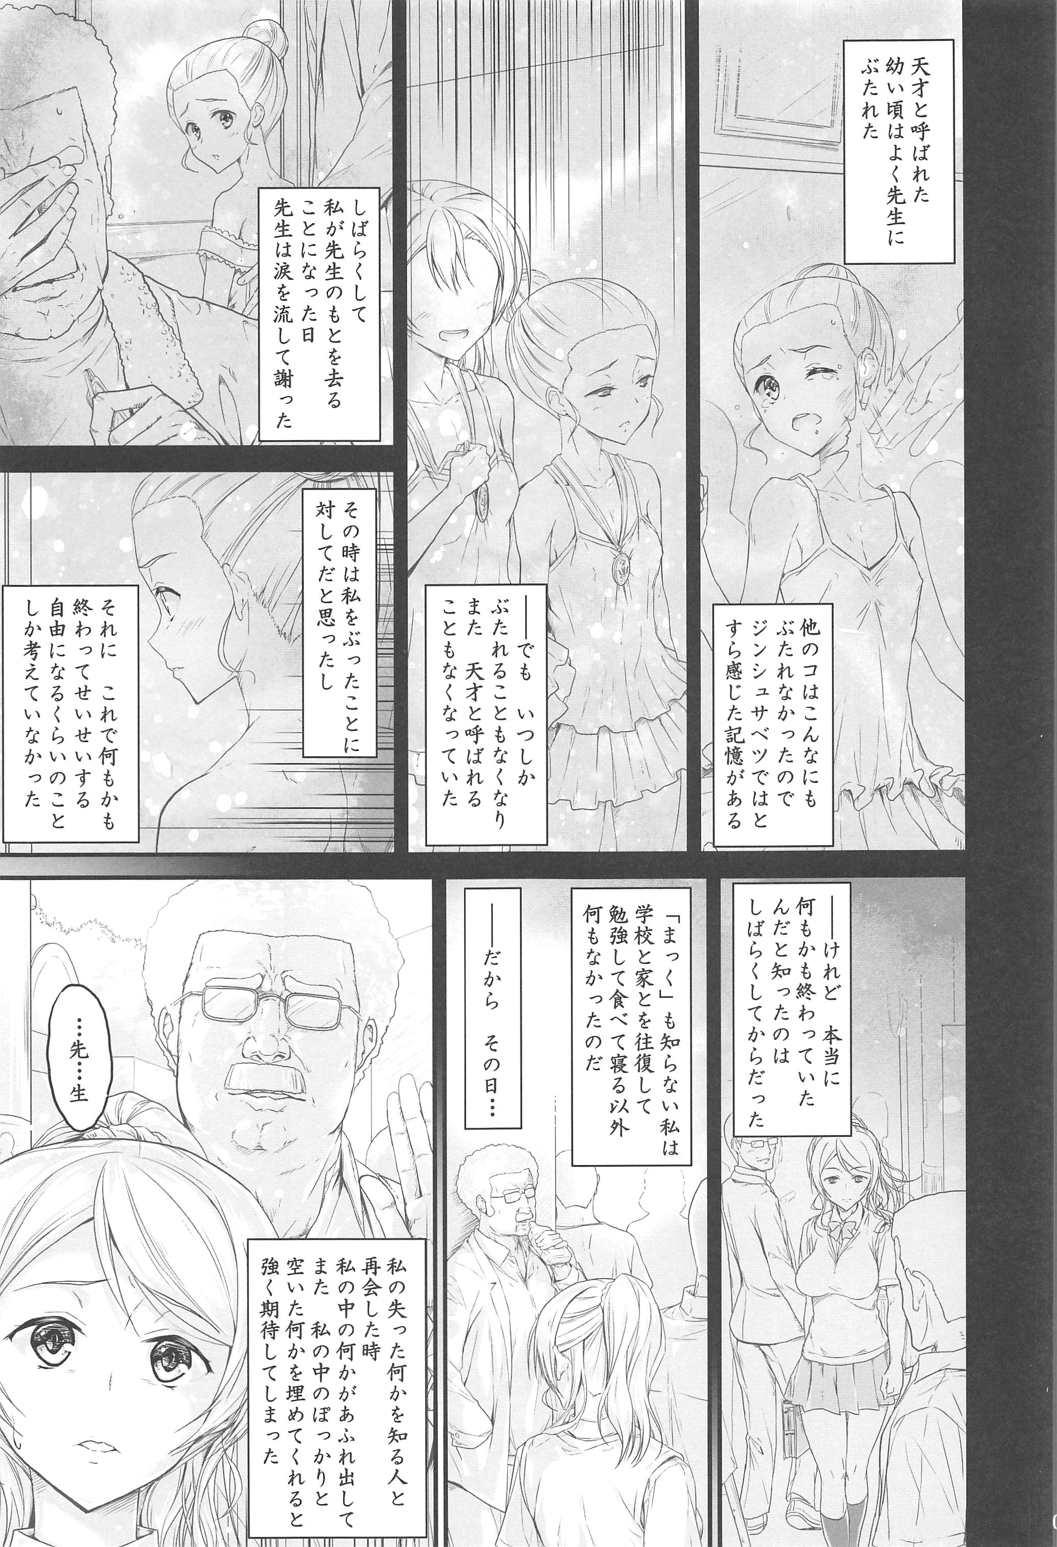 Nylons Kouhensachi no Yuutousei de Jiki Seito Kaichou Saiyuuryoku Kouho no Ninen Erichika - Love live Bubble - Page 3